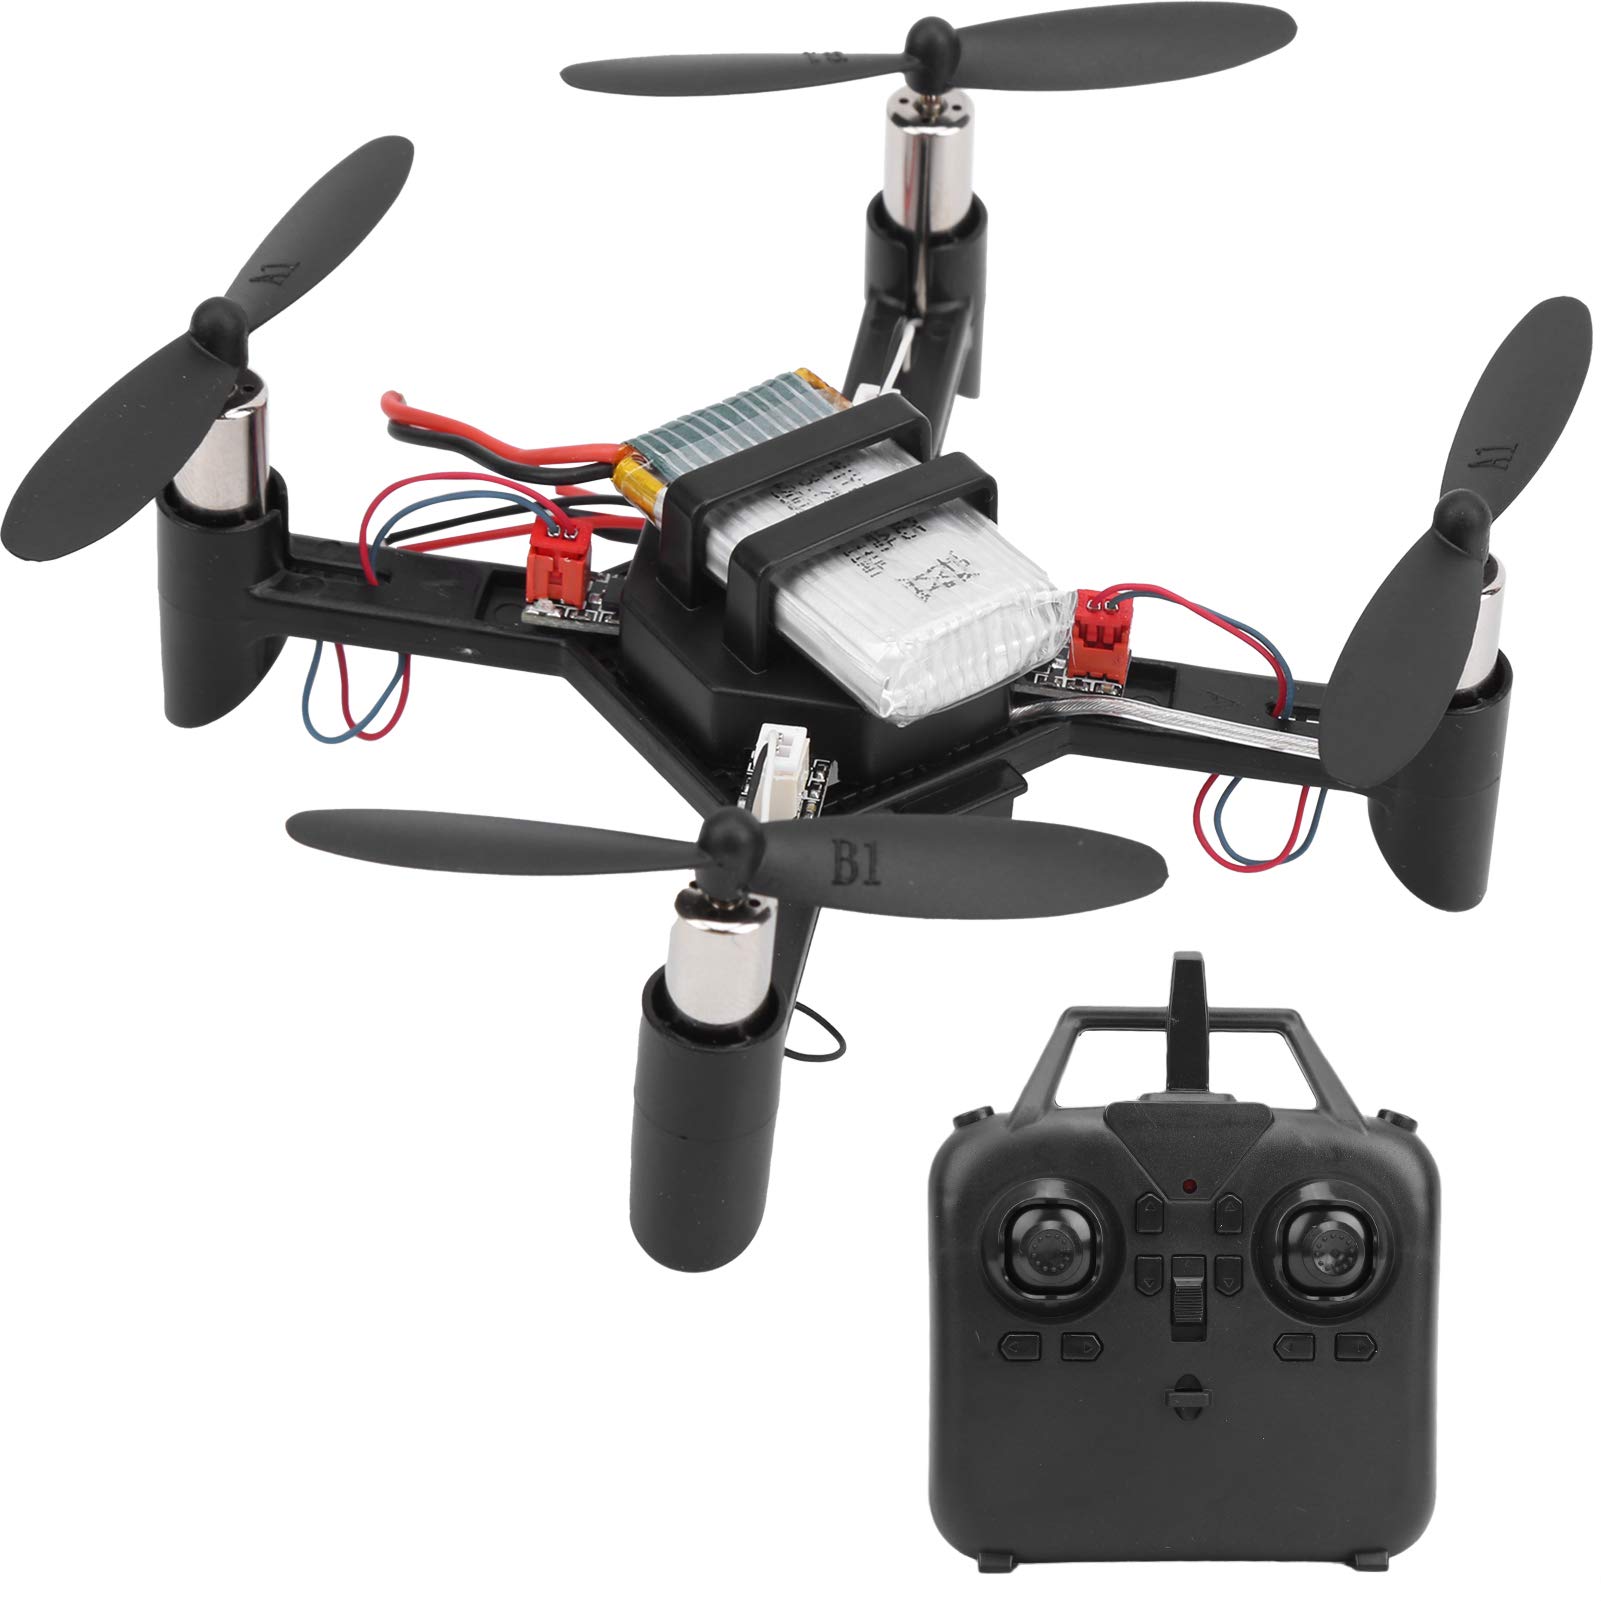 Mini Drone DIY RC Kit, leichtes DIY ferngesteuertes Drohnen-Kit 2.4G Mini Quadcopter Lern-Drohnen Geschenk für Anfänger